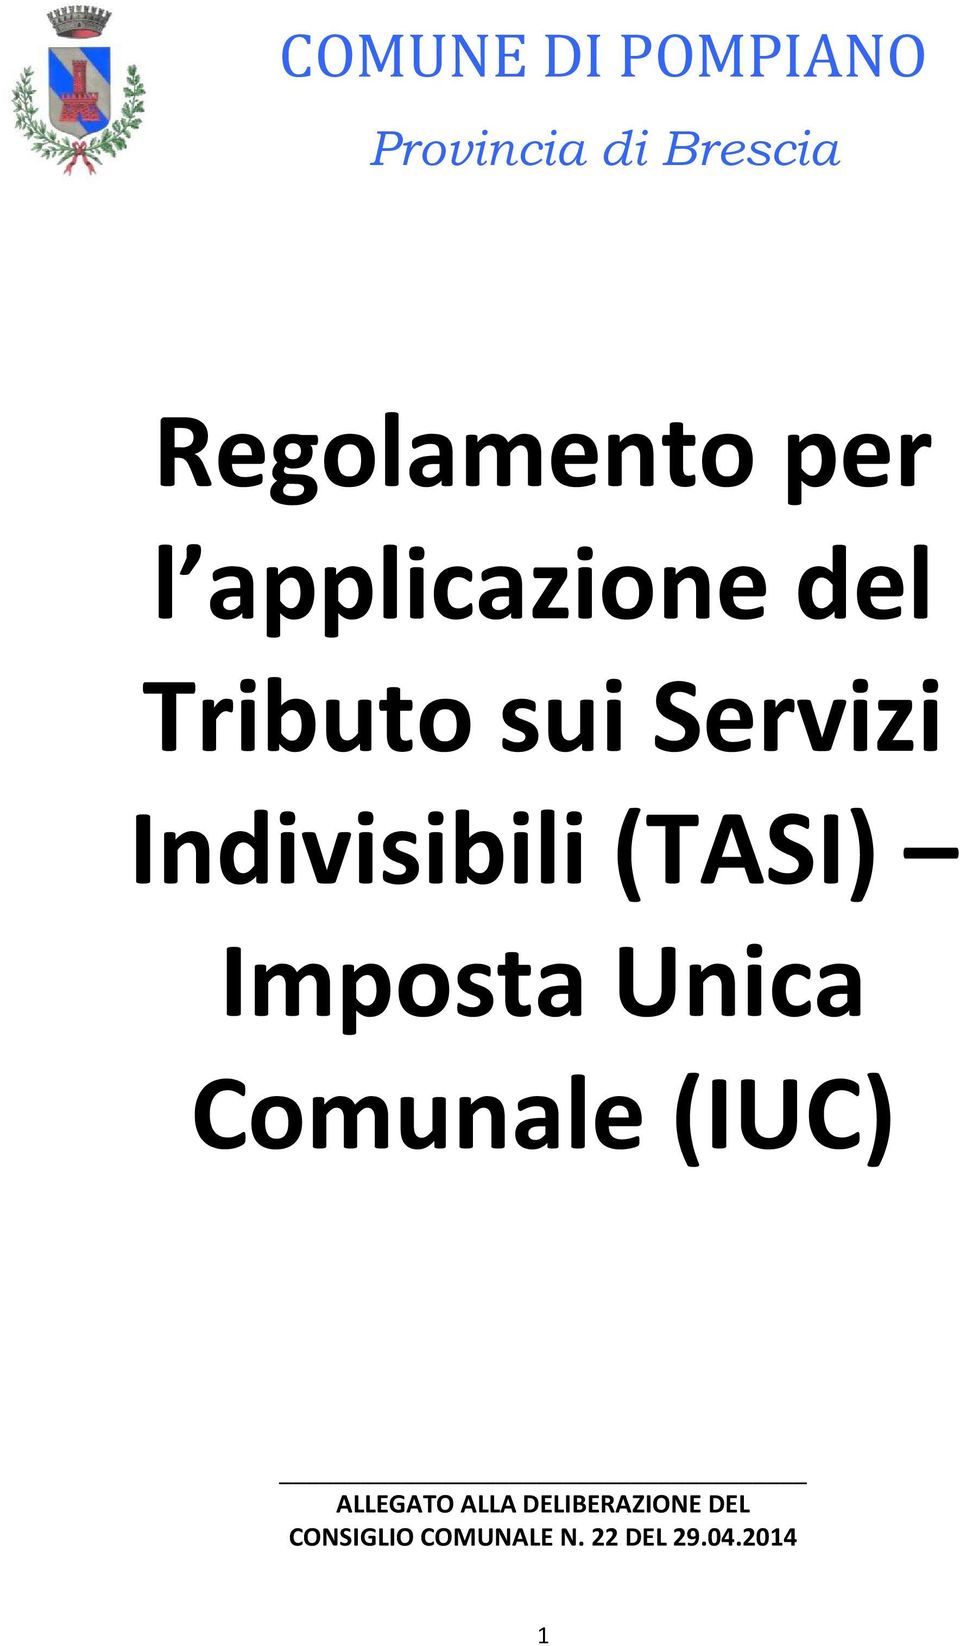 Indivisibili (TASI) Imposta Unica Comunale (IUC)